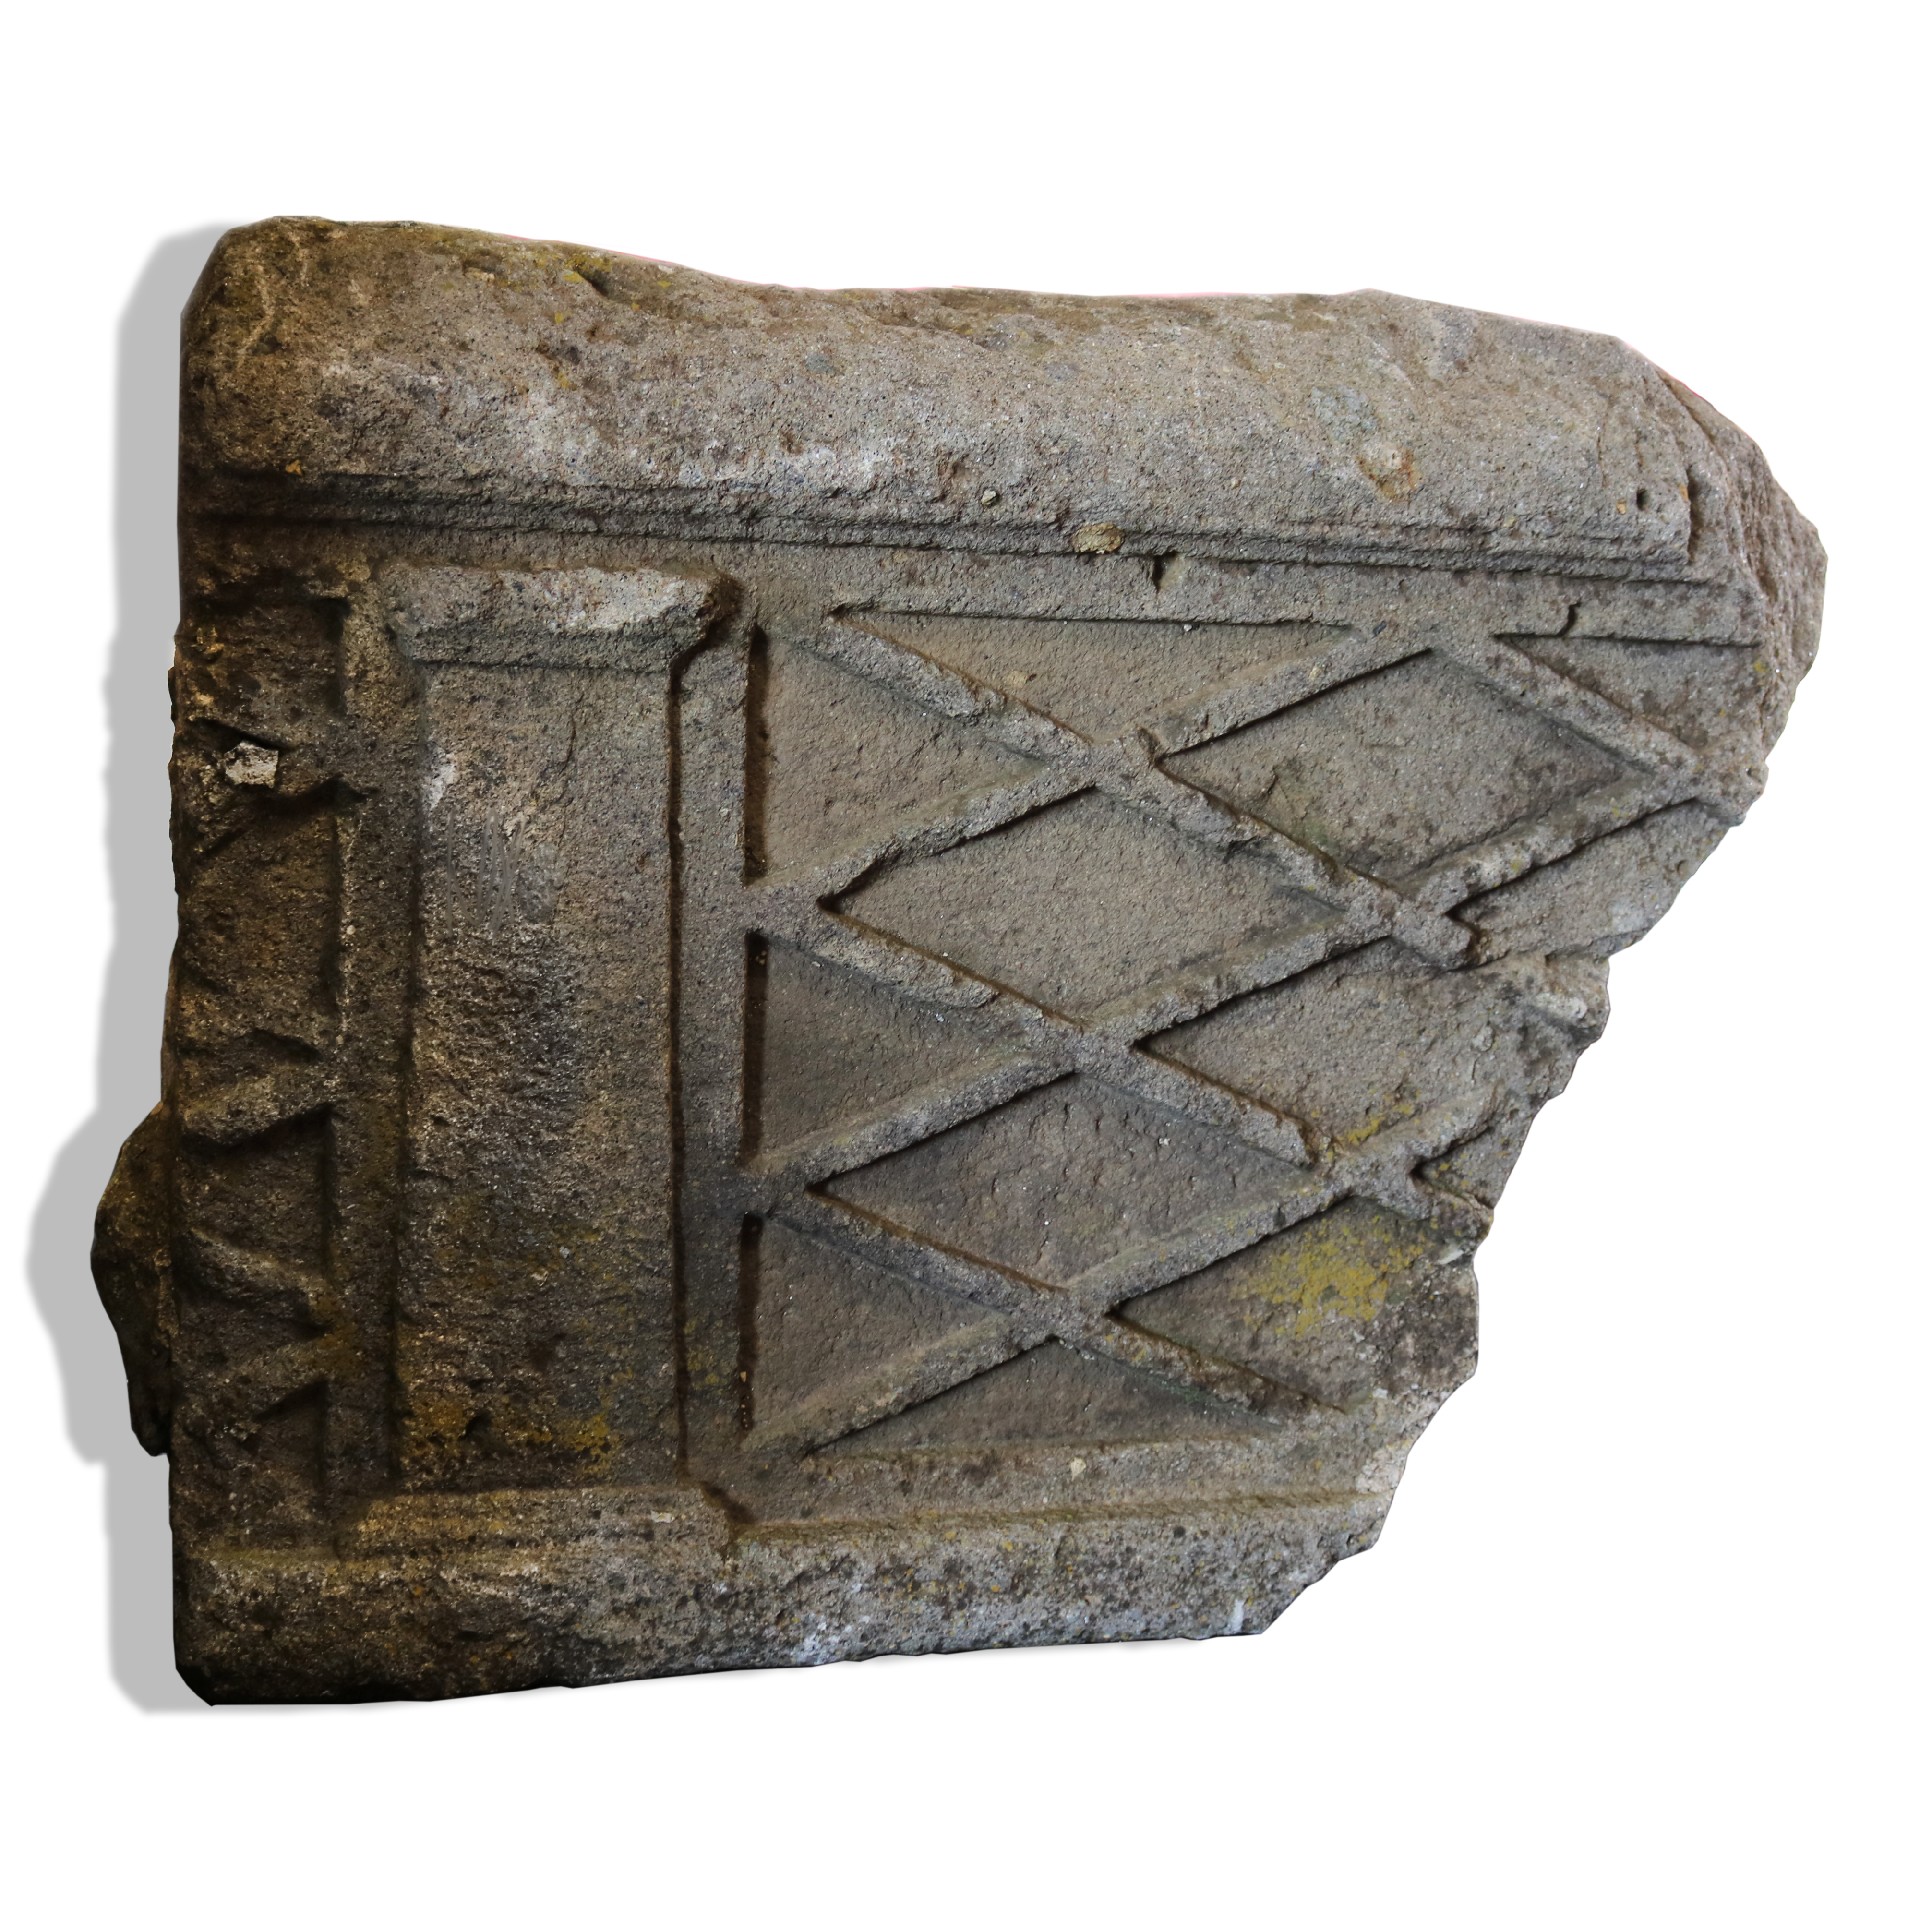 Antico frammento cornicione in pietra. - Elementi Architettonici - Architettura - Prodotti - Antichità Fiorillo